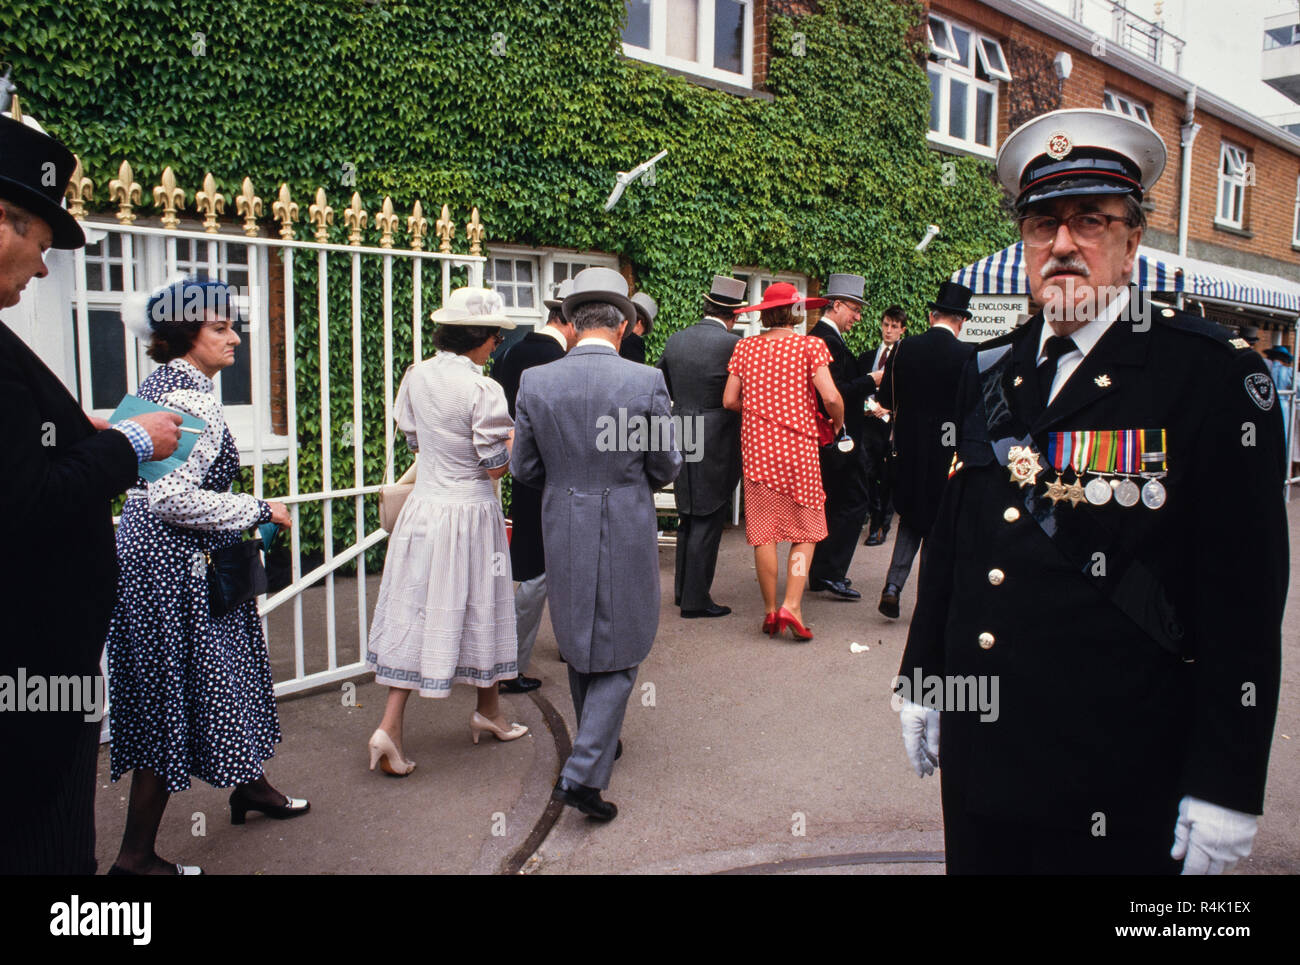 Les courses d'Ascot Angleterre UK 1986 numérisé en 2018 la famille royale britannique arriver et marcher environ à Royal Ascot en 1986 Membres du public vêtus de beaux chapeaux et chapeaux haut et la queue pour les hommes de Royal Ascot. Banque D'Images